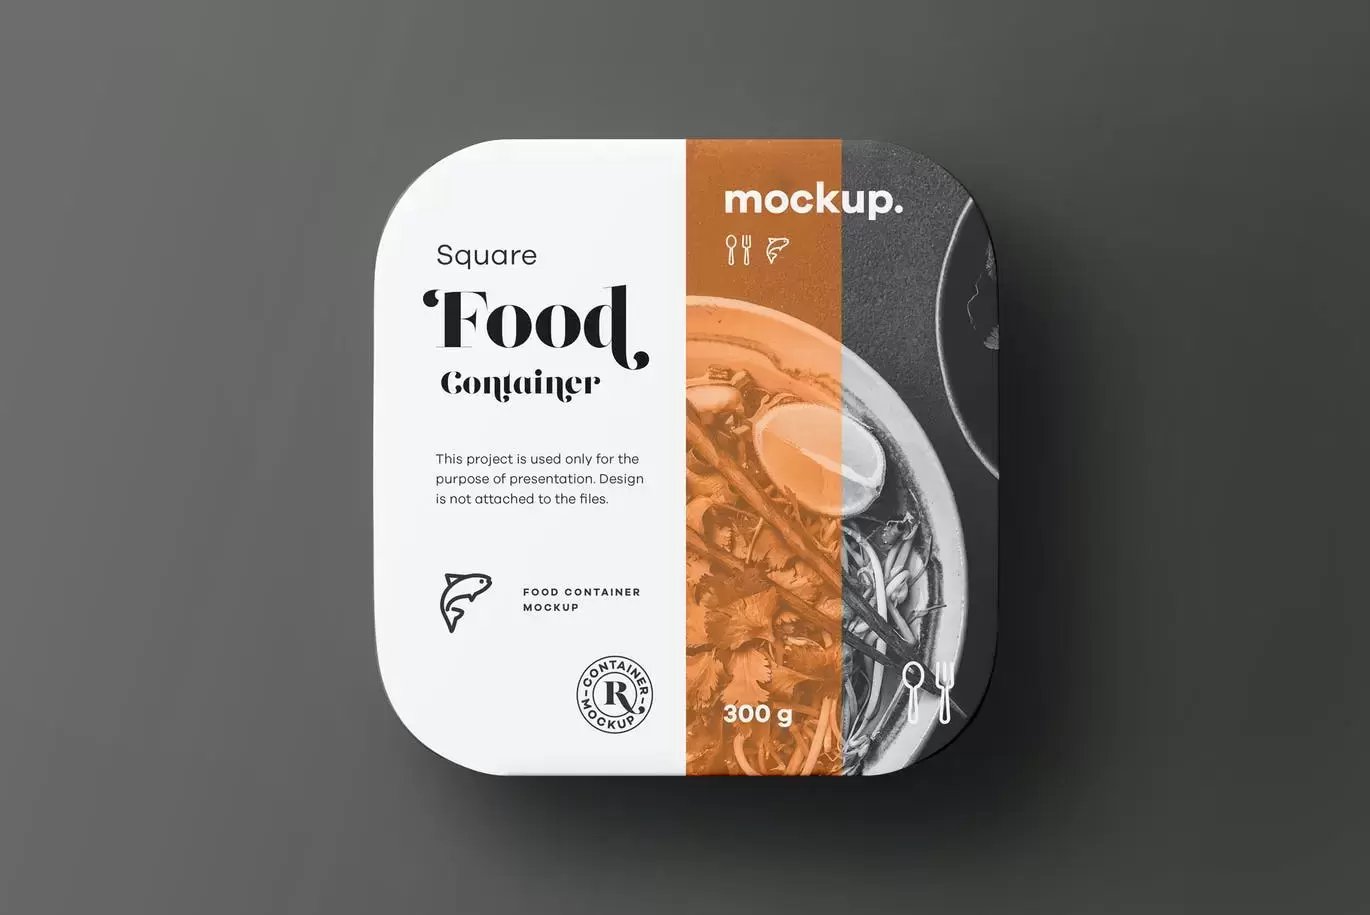 时尚高端专业的高品质正方形食品包装设计VI样机展示模型mockups免费下载插图2